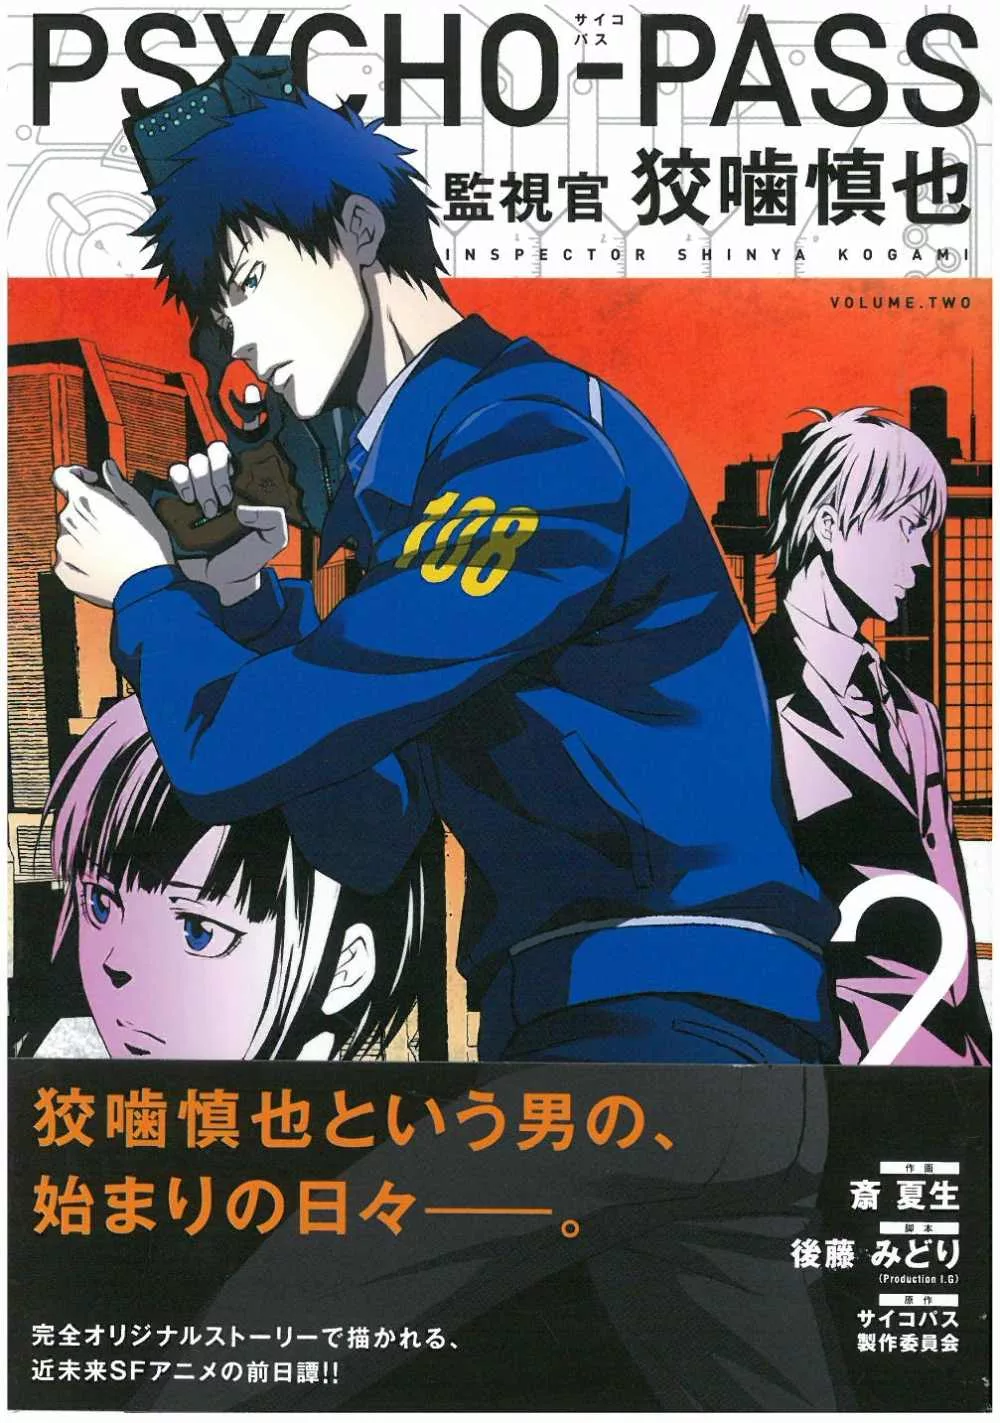 日本版漫畫 Psycho Pass監視官狡嚙慎也2 買書網